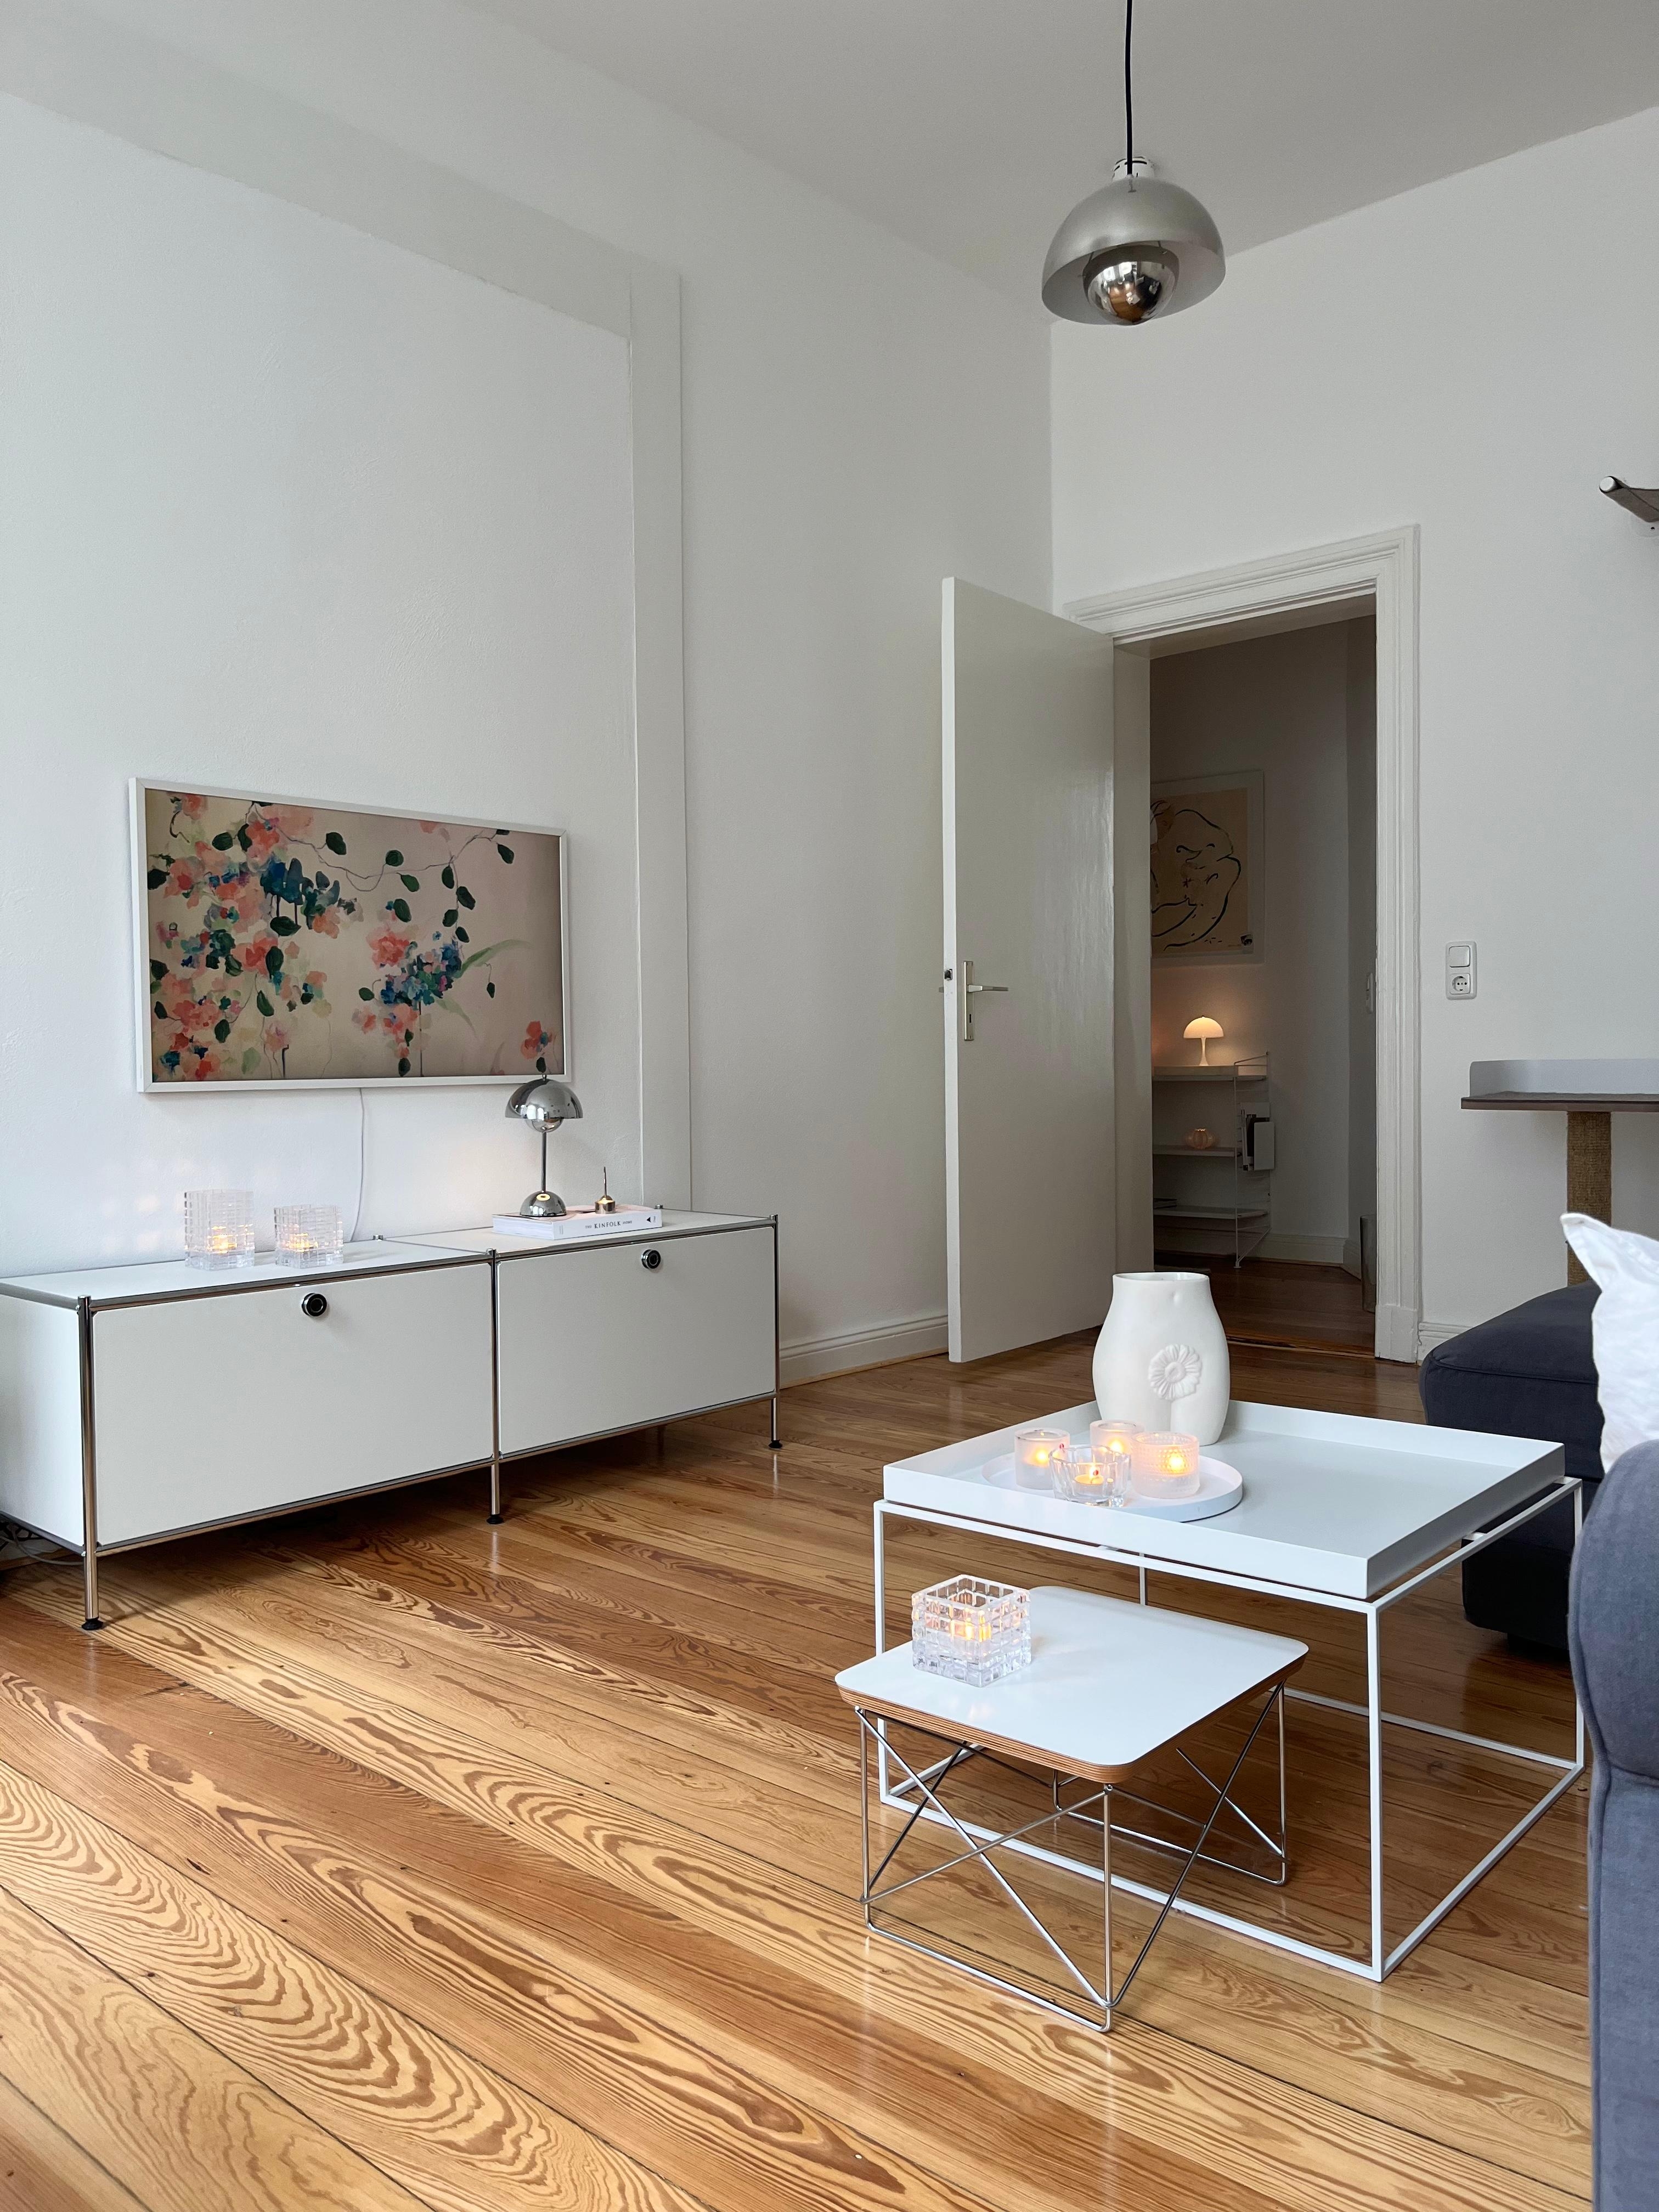 #wohnzimmer #skandinavischwohnen #altbauwohnung #danishdesign